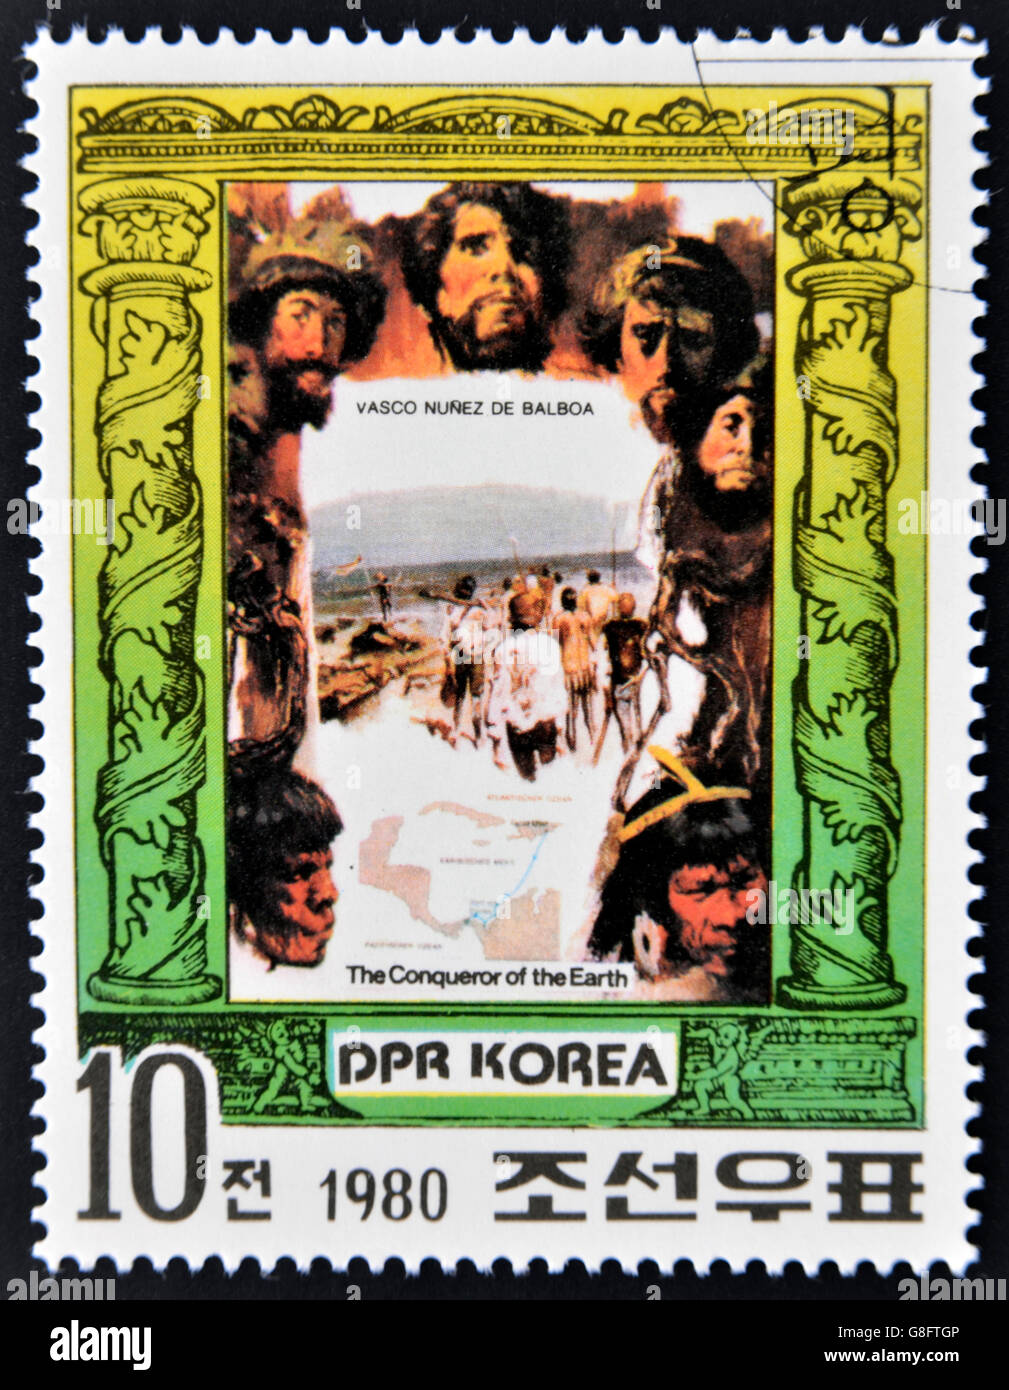 République populaire démocratique de Corée (RPD) - vers 1980 : un timbre imprimé en Corée du Nord montre Vasco Núñez de Balboa, la série da Banque D'Images